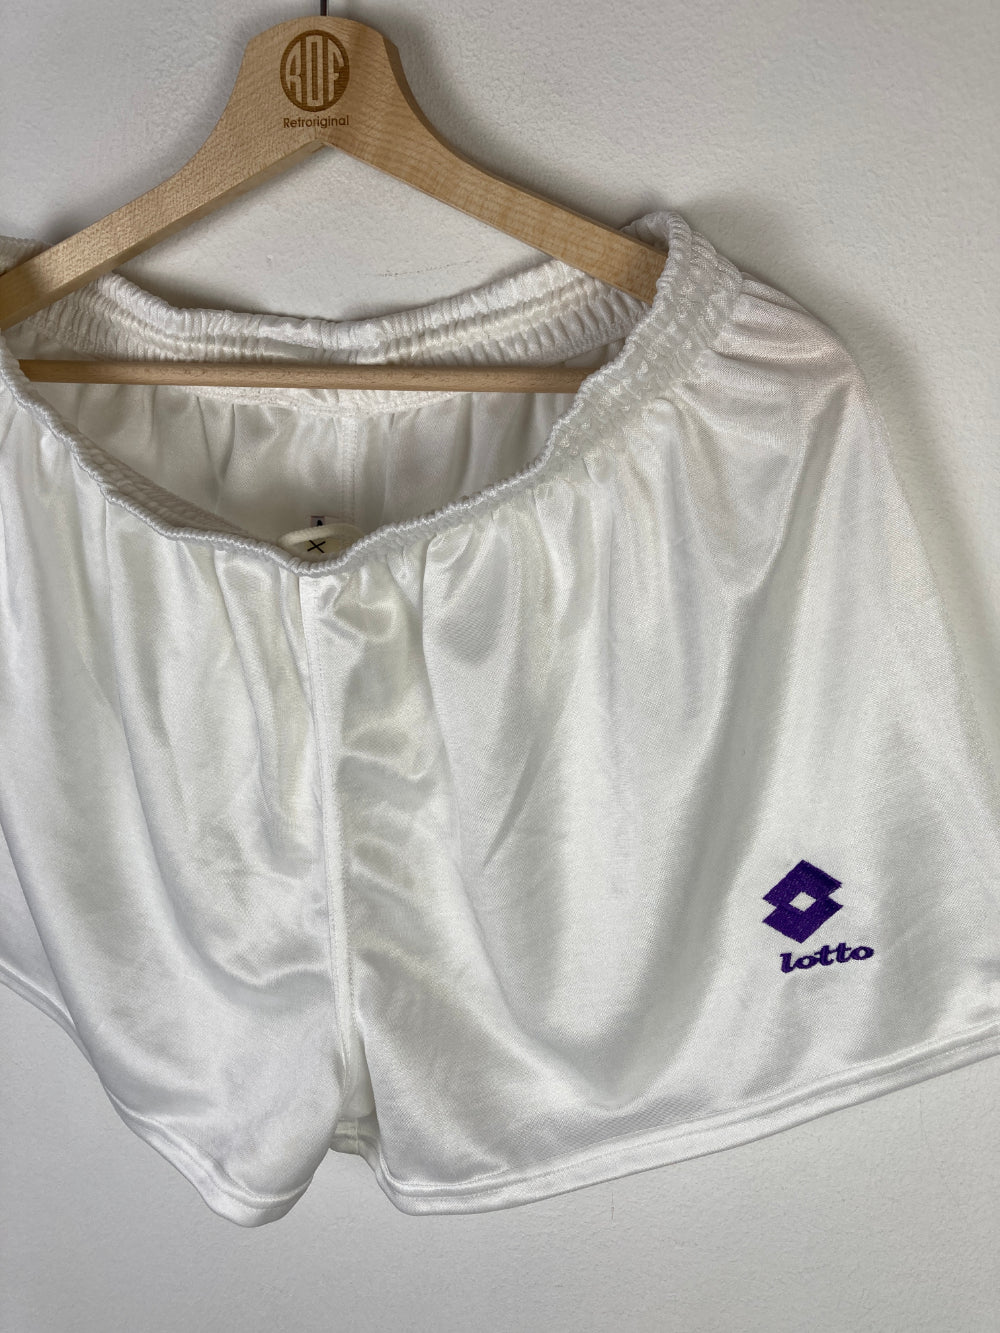 
                  
                    Original ACF Fiorentina Home Short 1992-1993 - XL
                  
                